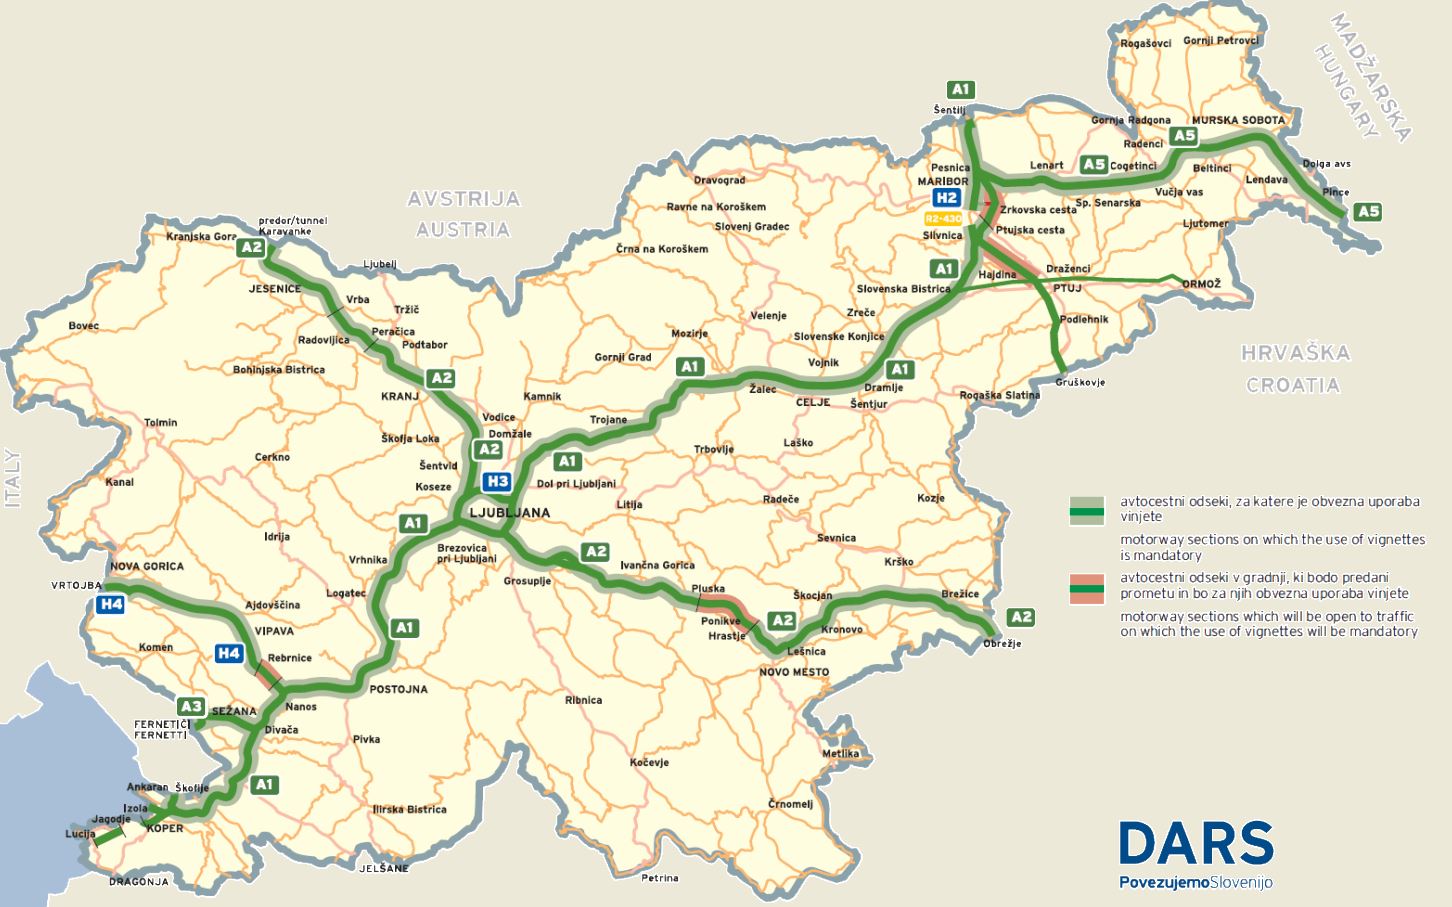 Slowenien bekommt ein neues Lkw-Mautsystem - Österreichische